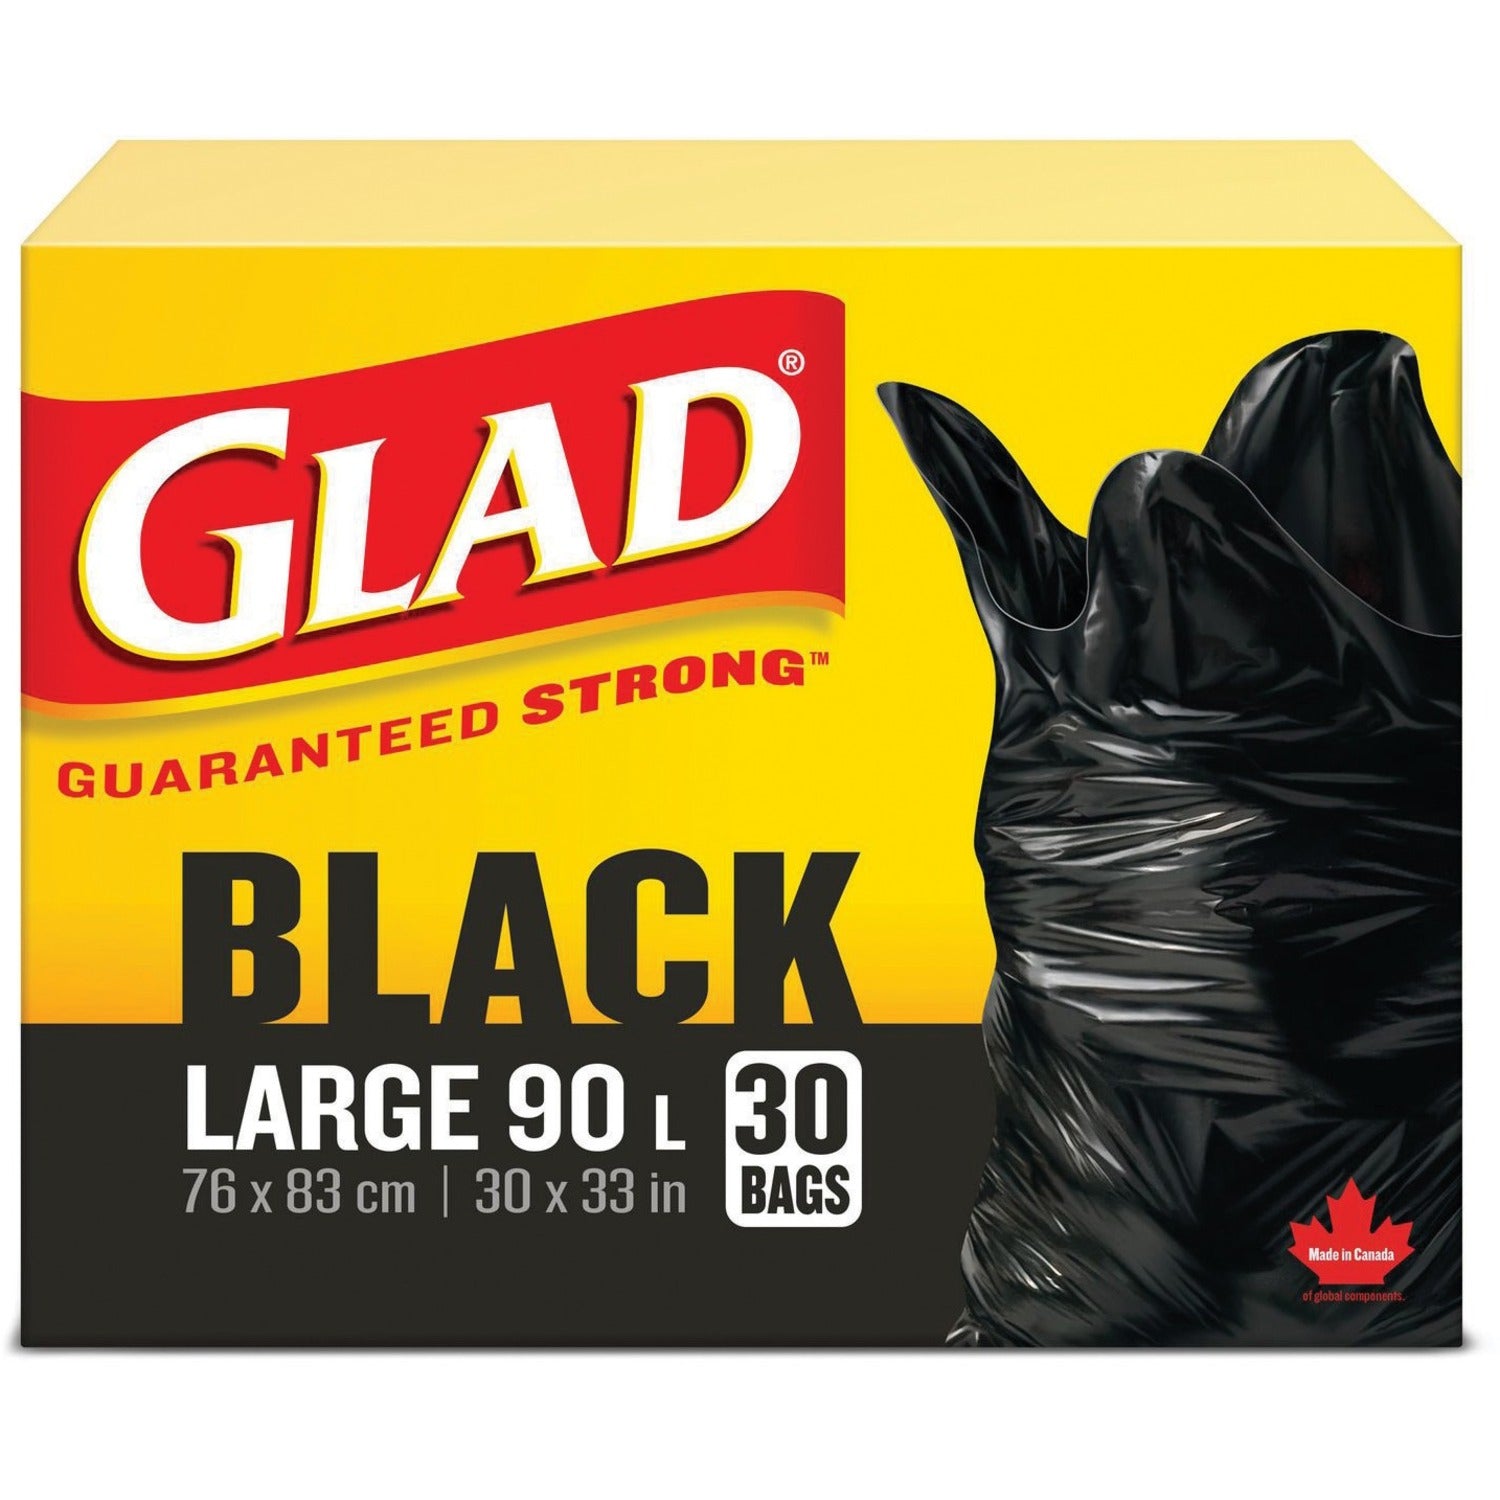 Glad Black 90L Large Bags